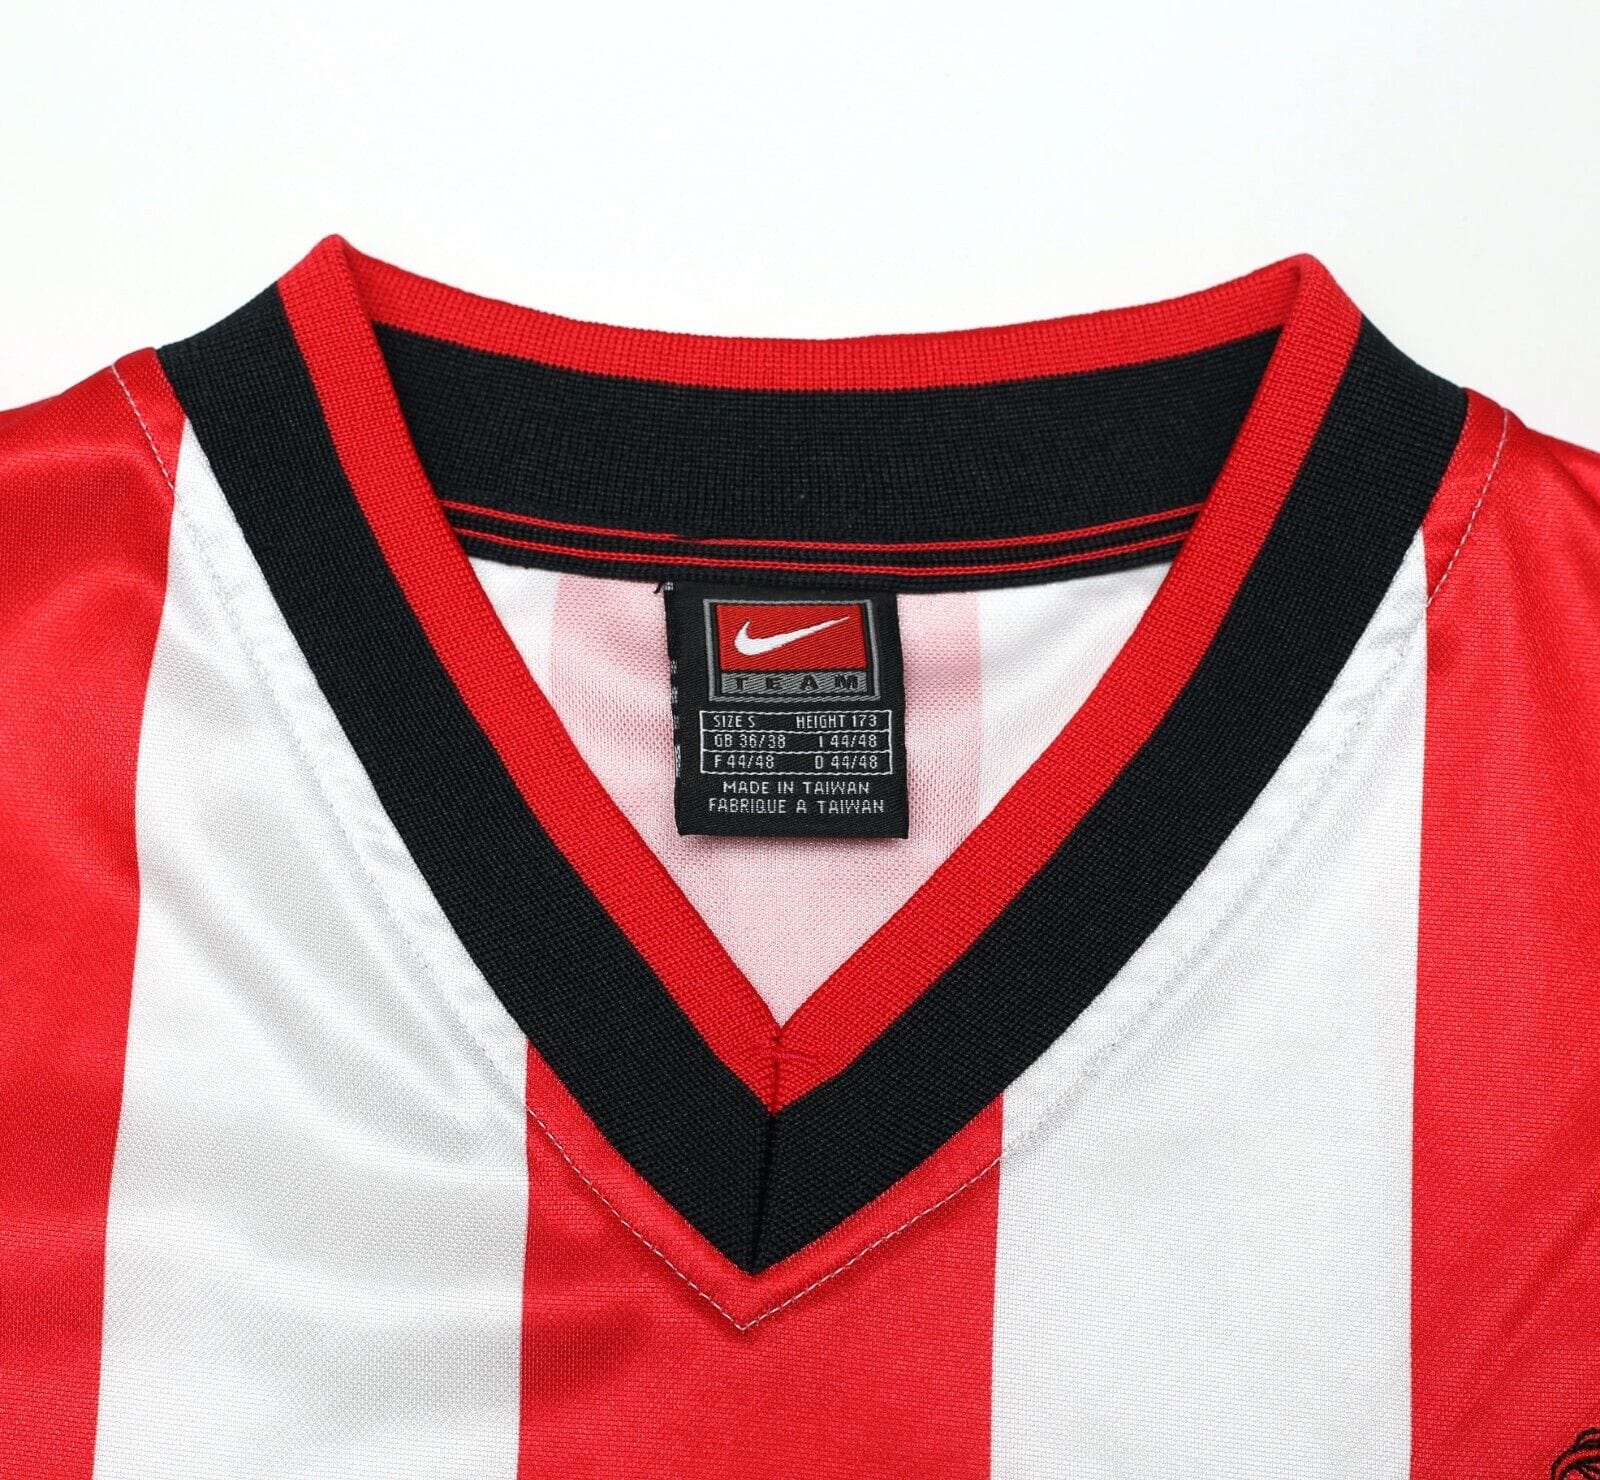 2000/02 PHILLIPS #10 Sunderland Vintage Nike Home Football Shirt (S/M)